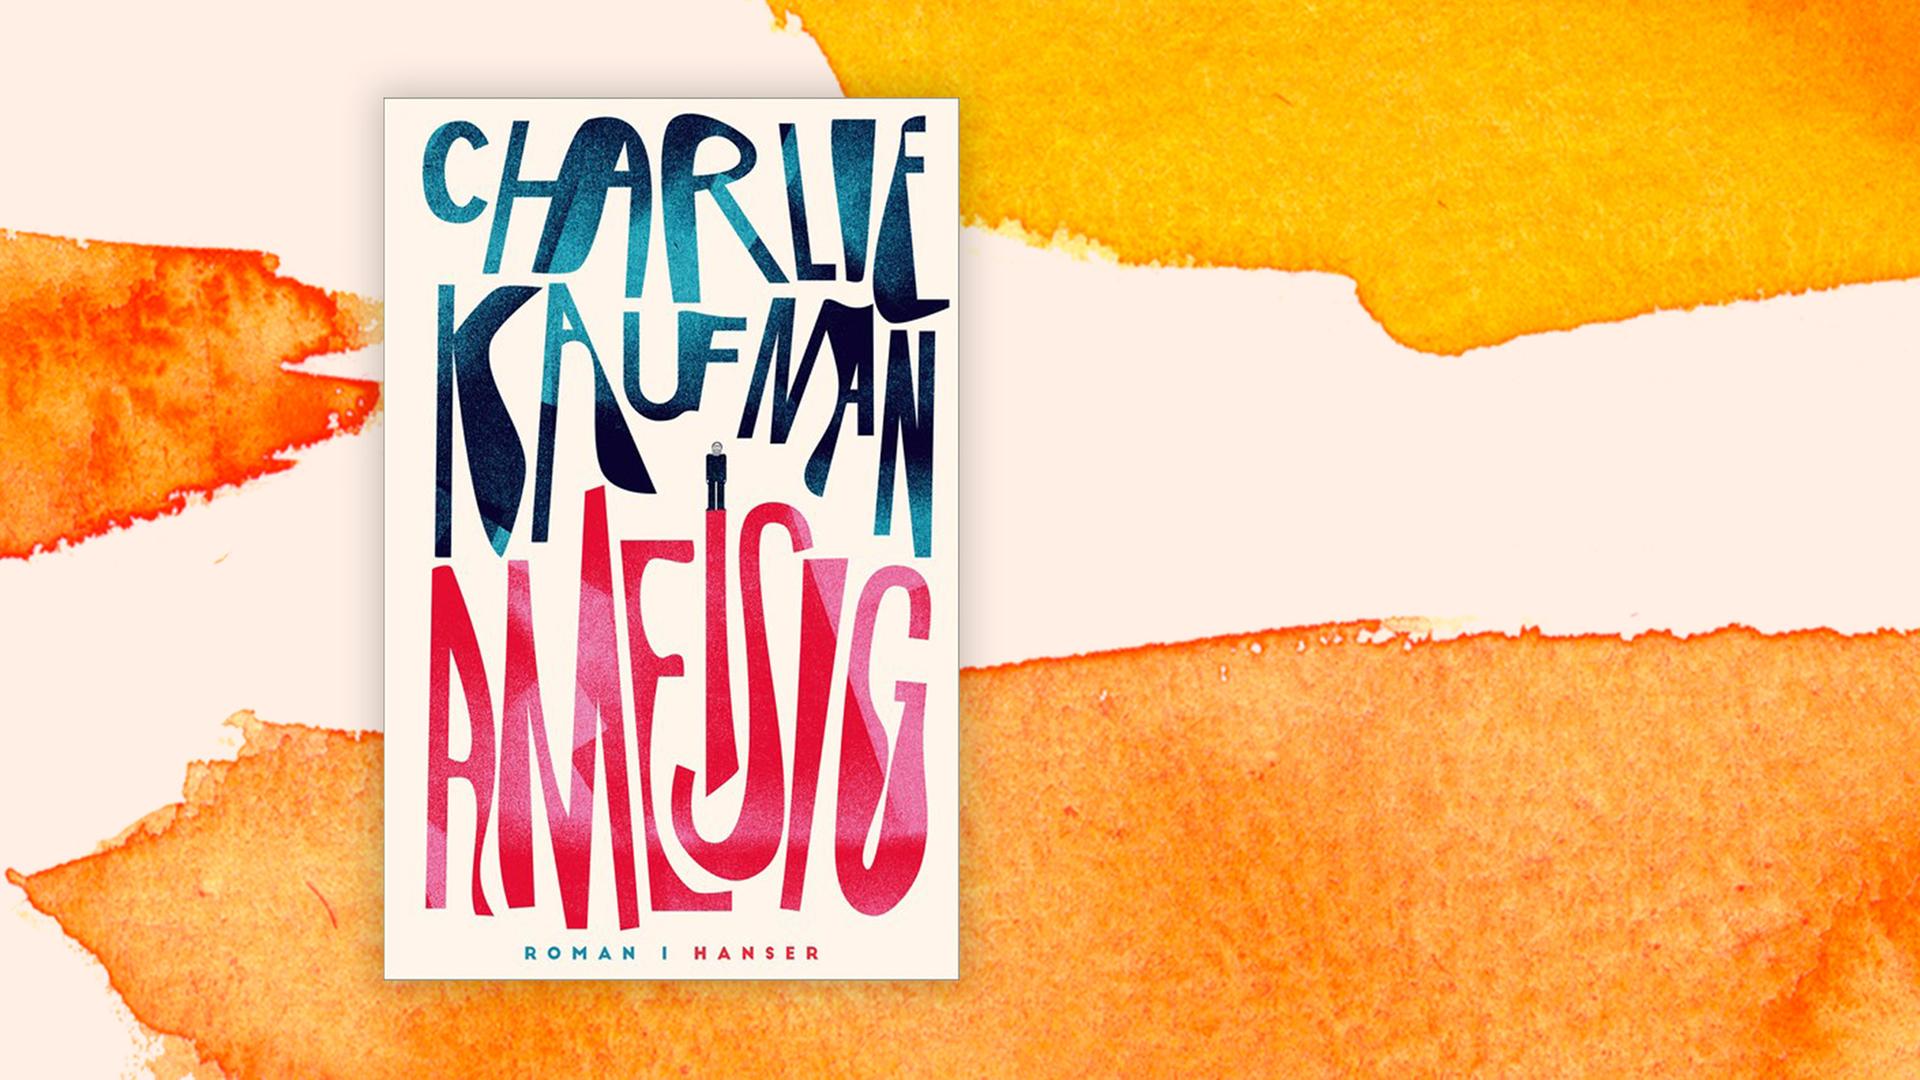 Buchcover vom Roman "Ameisig" von Charlie Kaufman